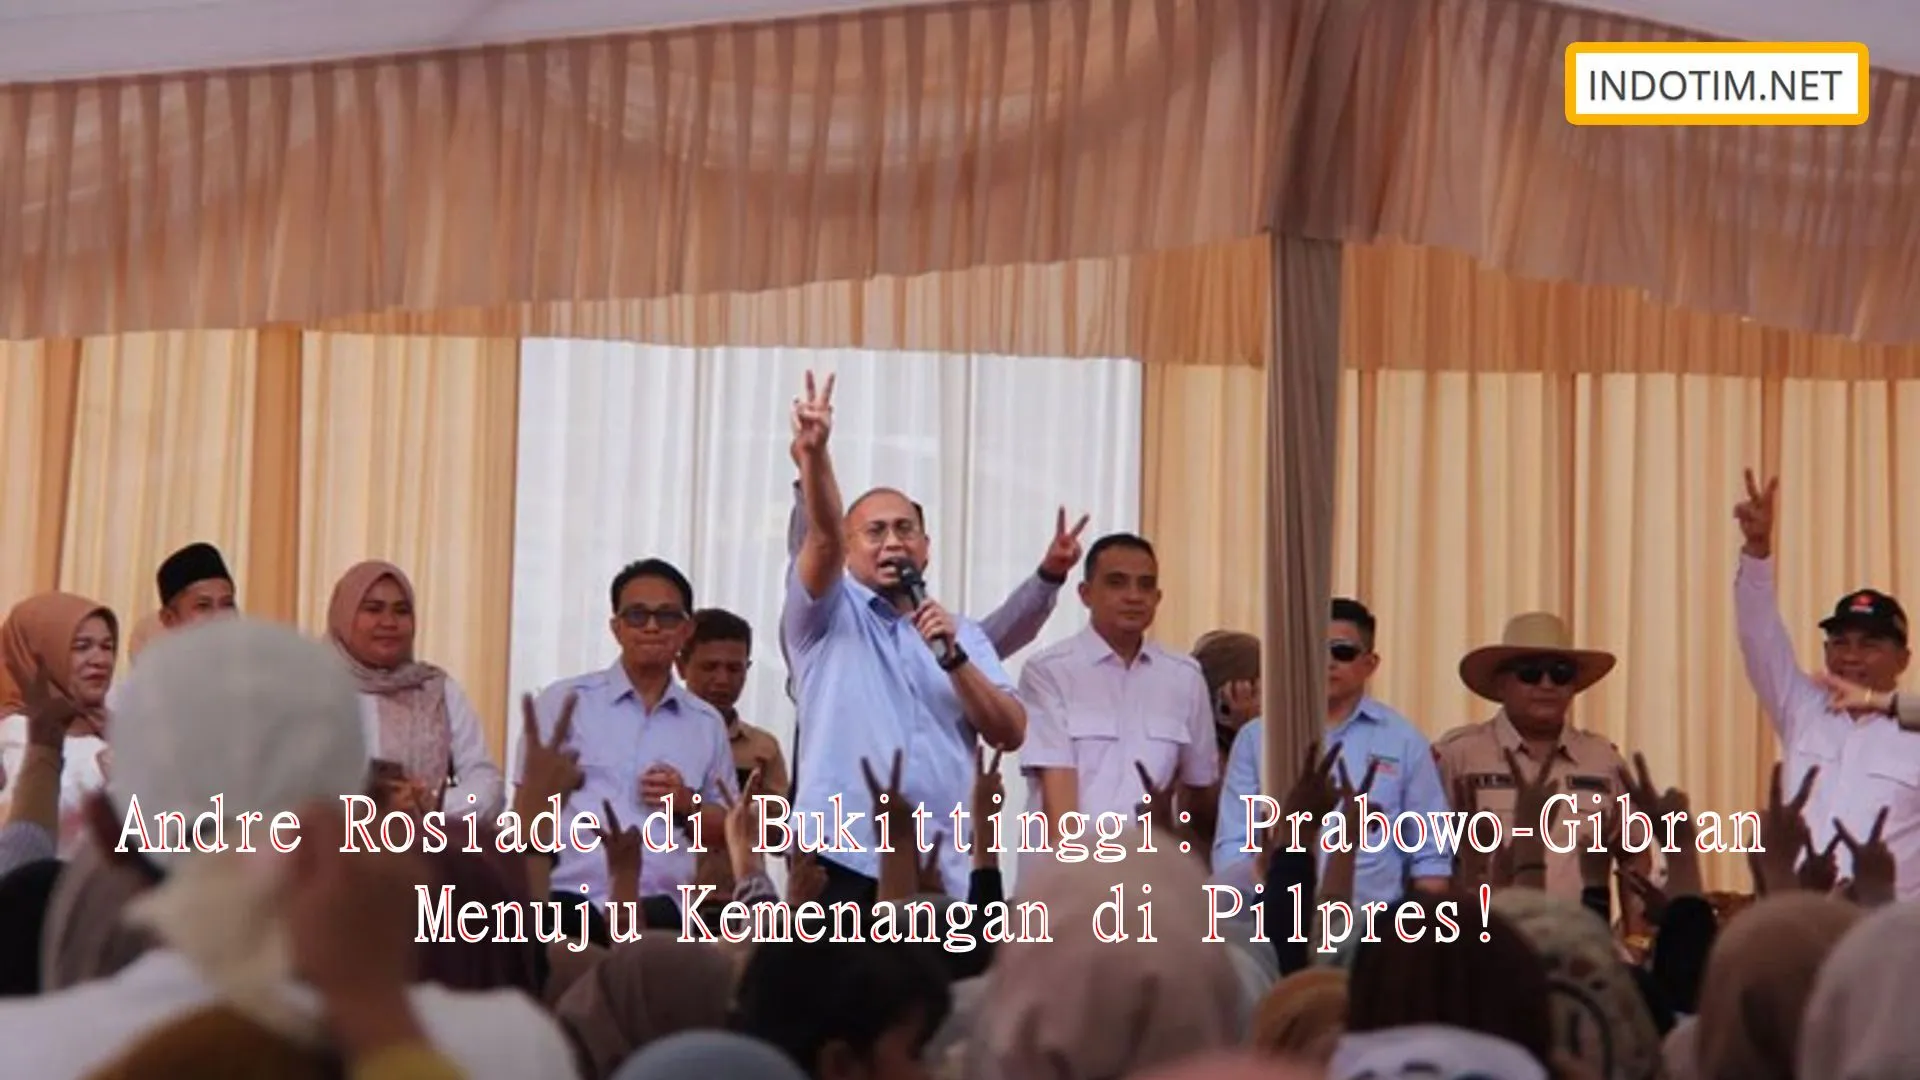 Andre Rosiade di Bukittinggi: Prabowo-Gibran Menuju Kemenangan di Pilpres!